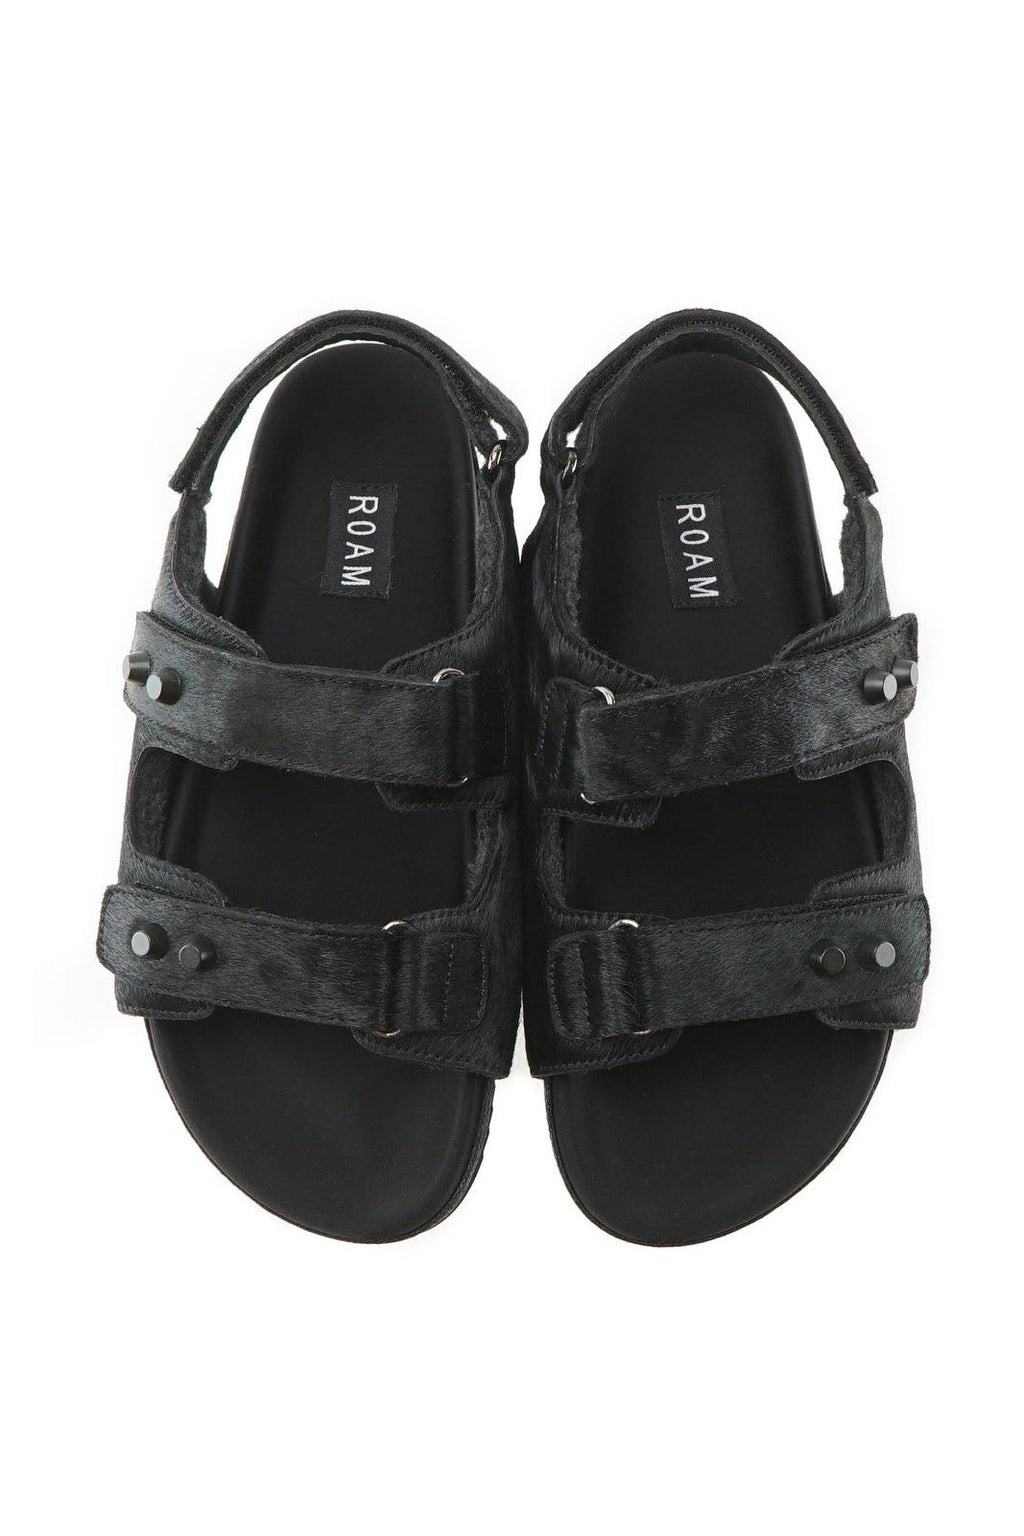 ROAM | Velcro Black Stap Sandal